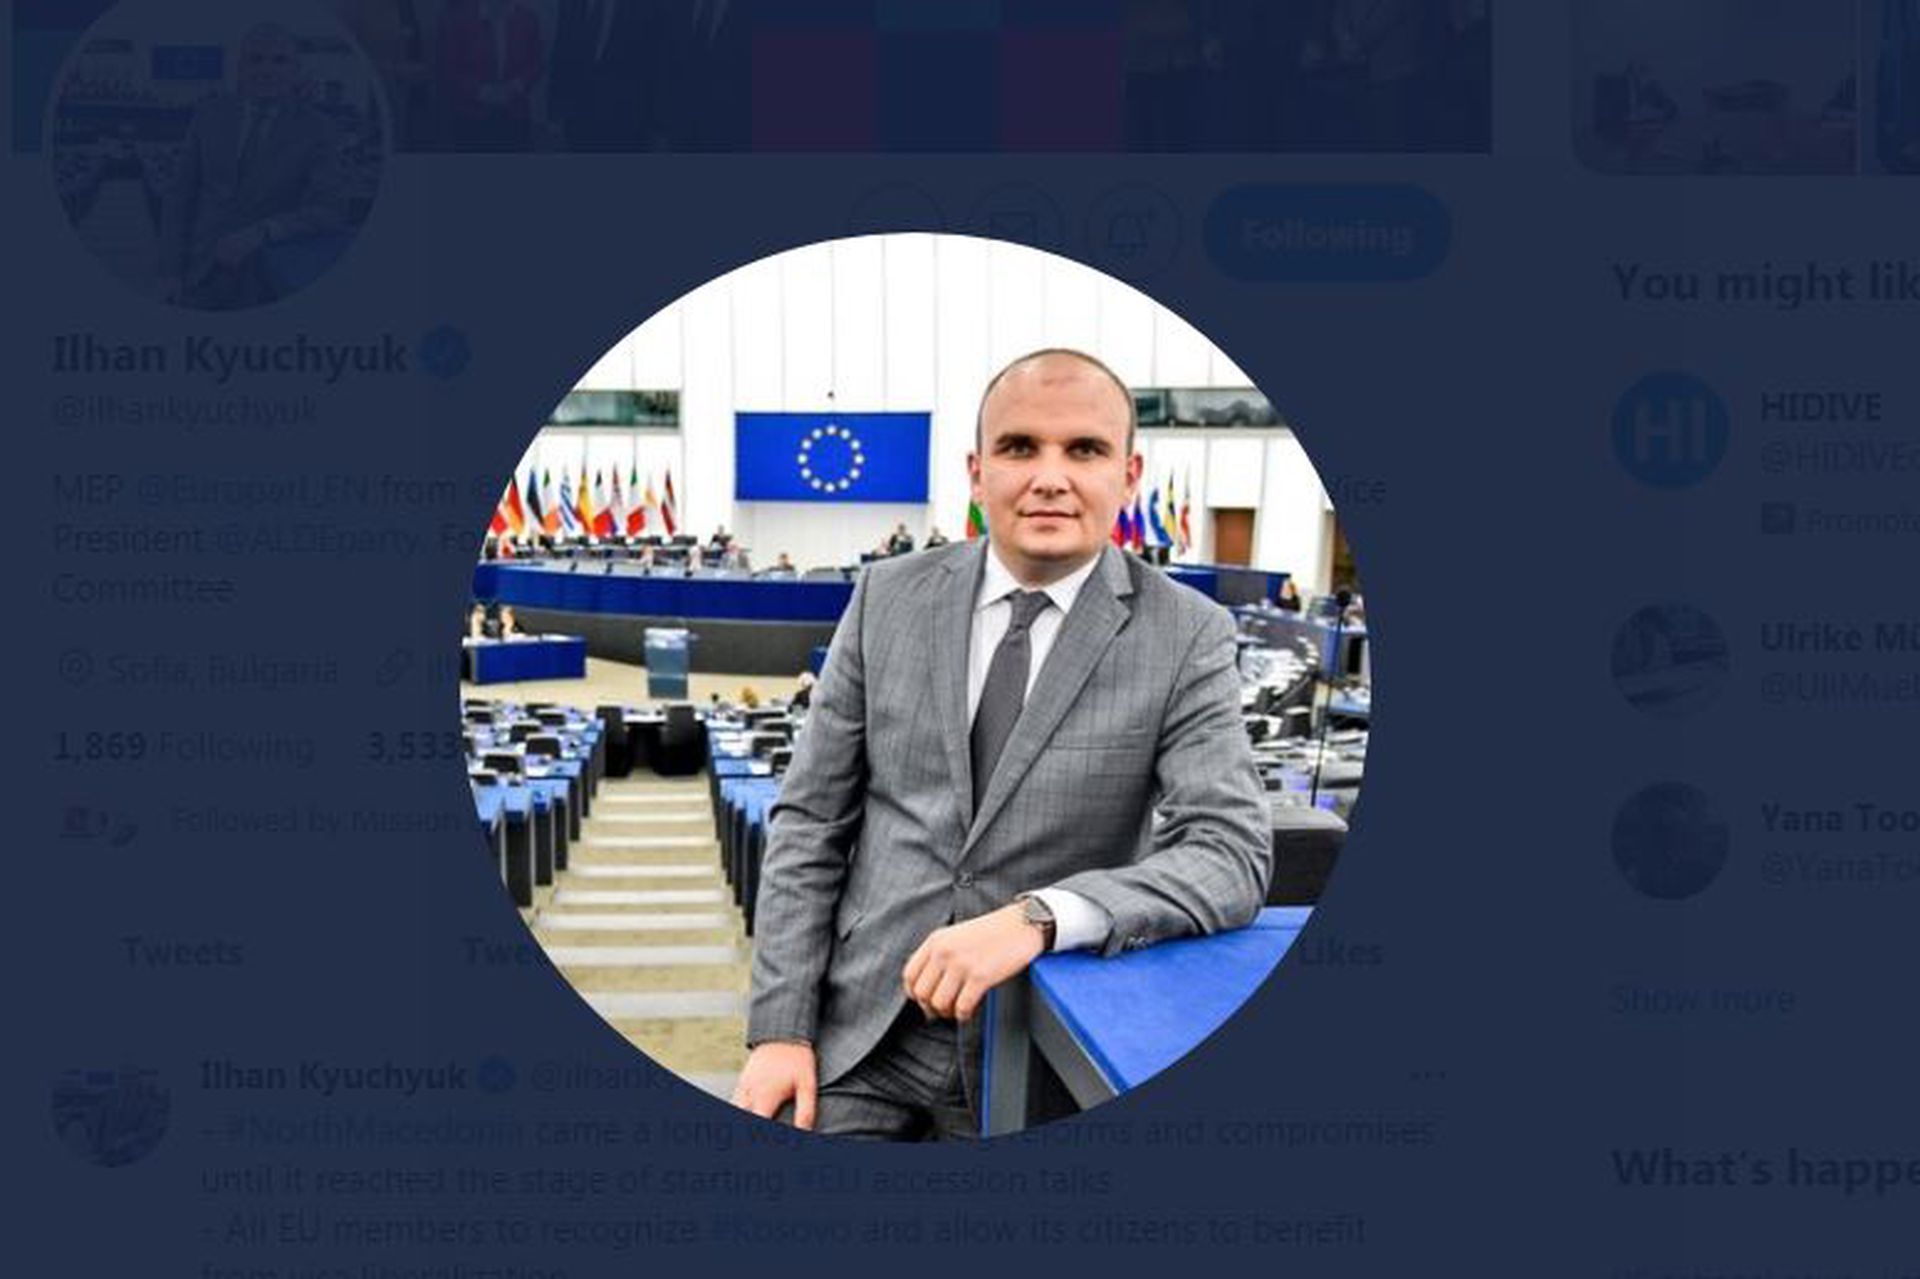 这是欧洲议会议员库楚克（Ilhan Kyuchyuk）。（Twitter@Ilhan Kyuchyuk截图）